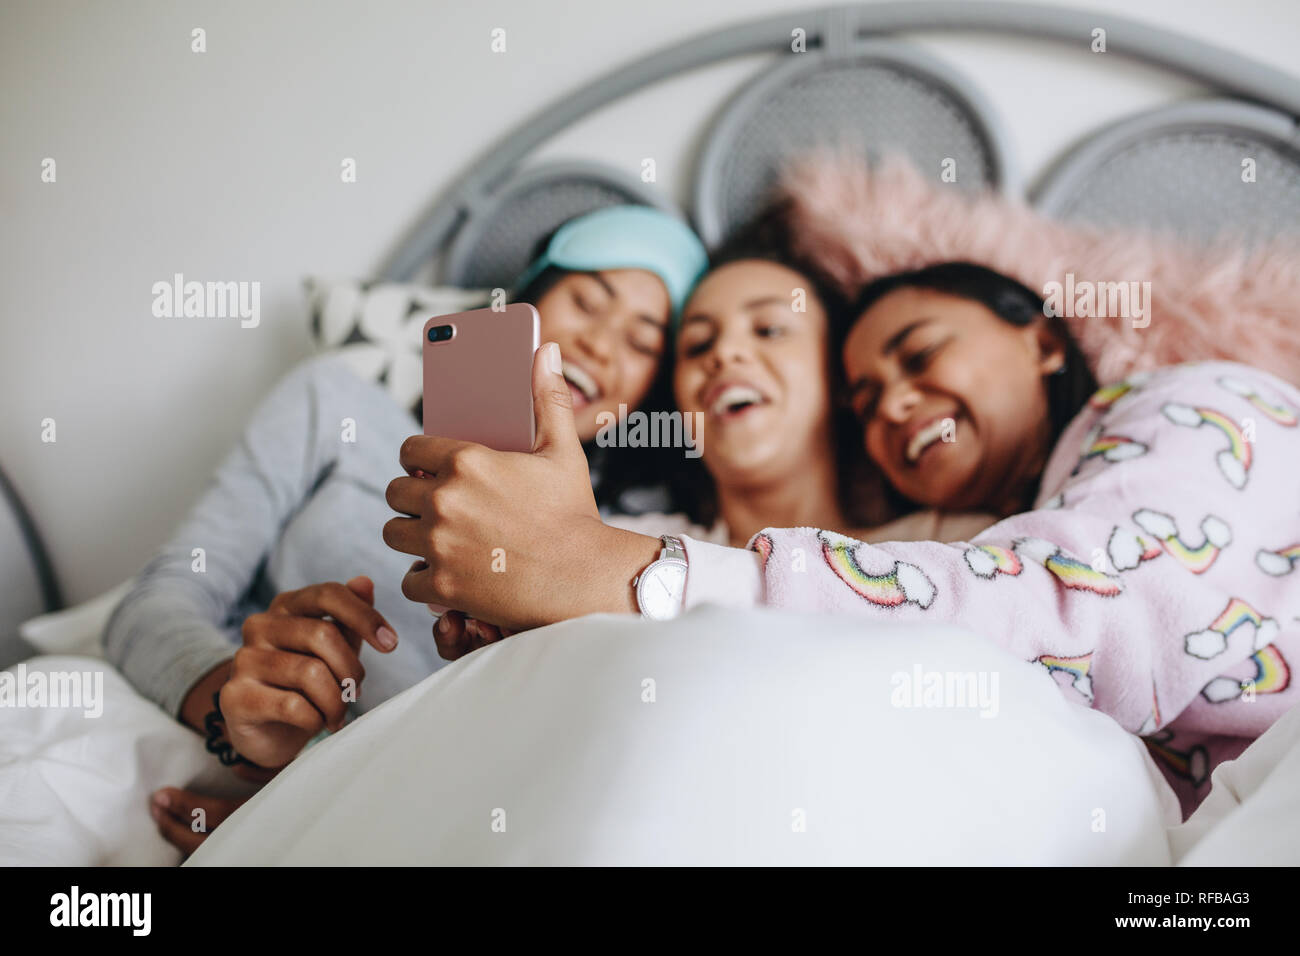 Mädchen liegen auf dem Bett Spaß ein selfie. Drei junge Mädchen genießen  Sie einen Film auf Handys bei sleepover Beim liegen auf dem Bett  Stockfotografie - Alamy